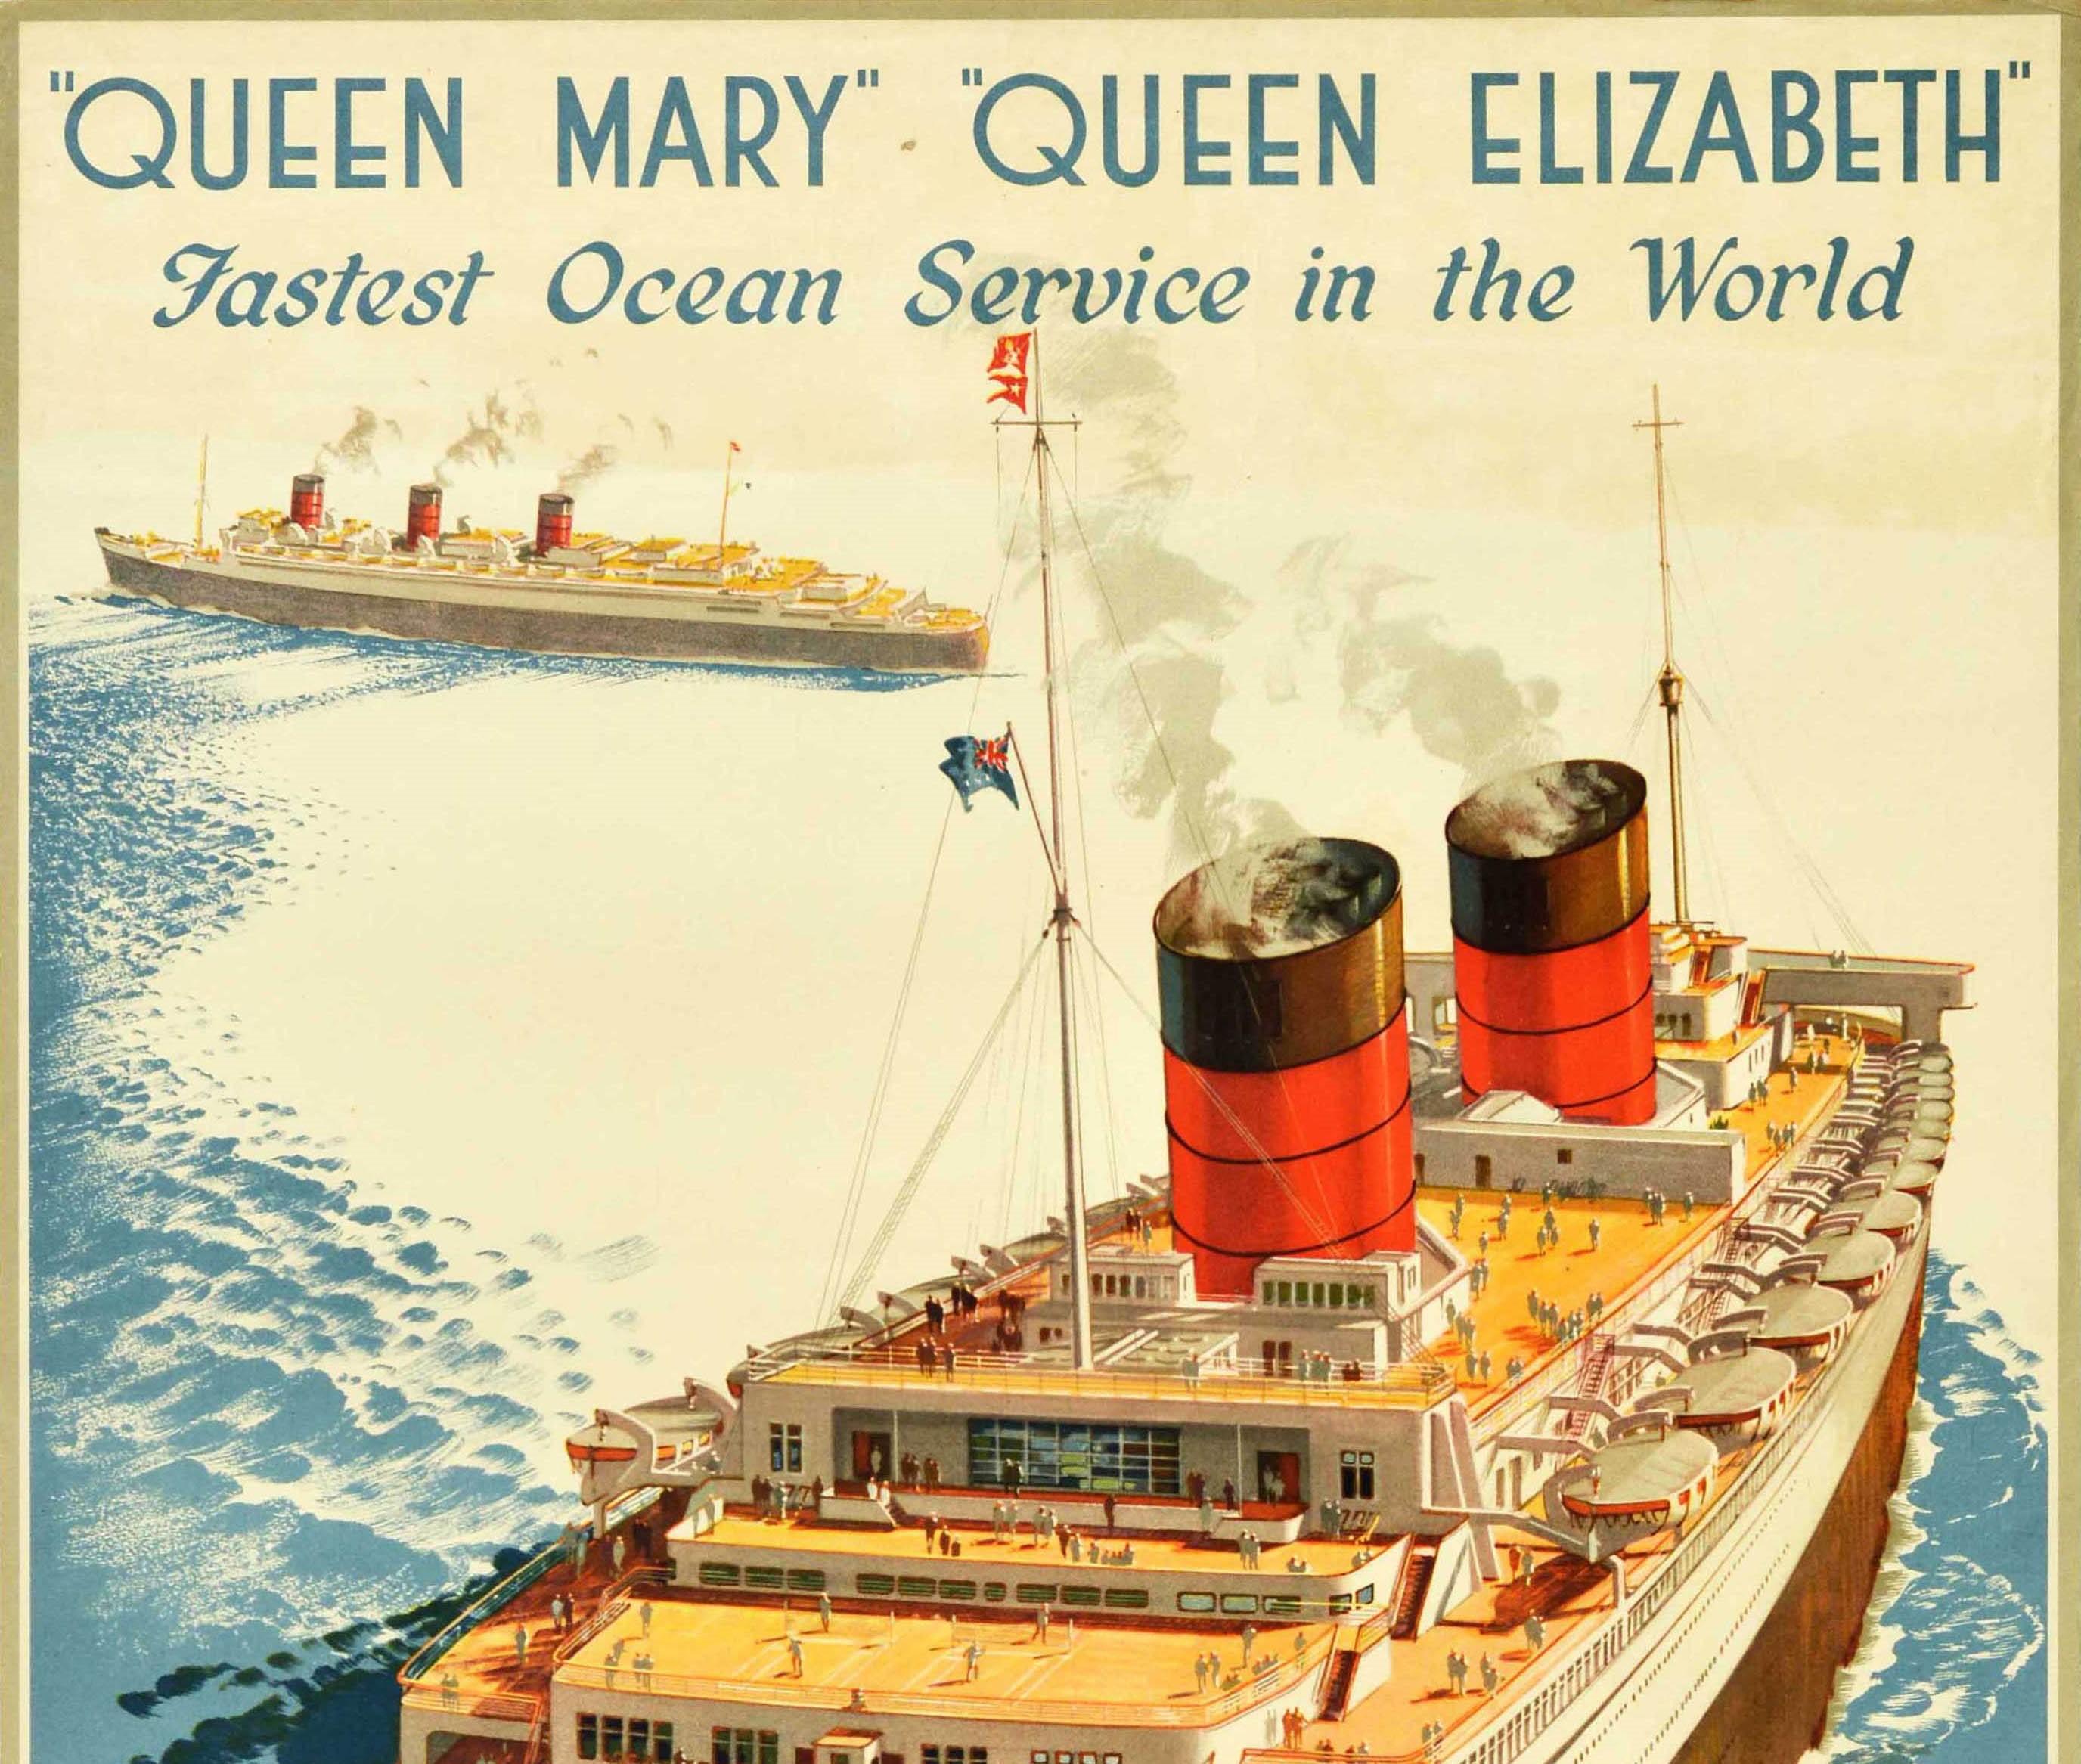 Affiche originale de voyage en croisière - Queen Mary Queen Elizabeth Fastest Ocean Service in the World Cunard White Star - comportant une image colorée des deux paquebots en mer montrant des passagers profitant de leur croisière sur les ponts du